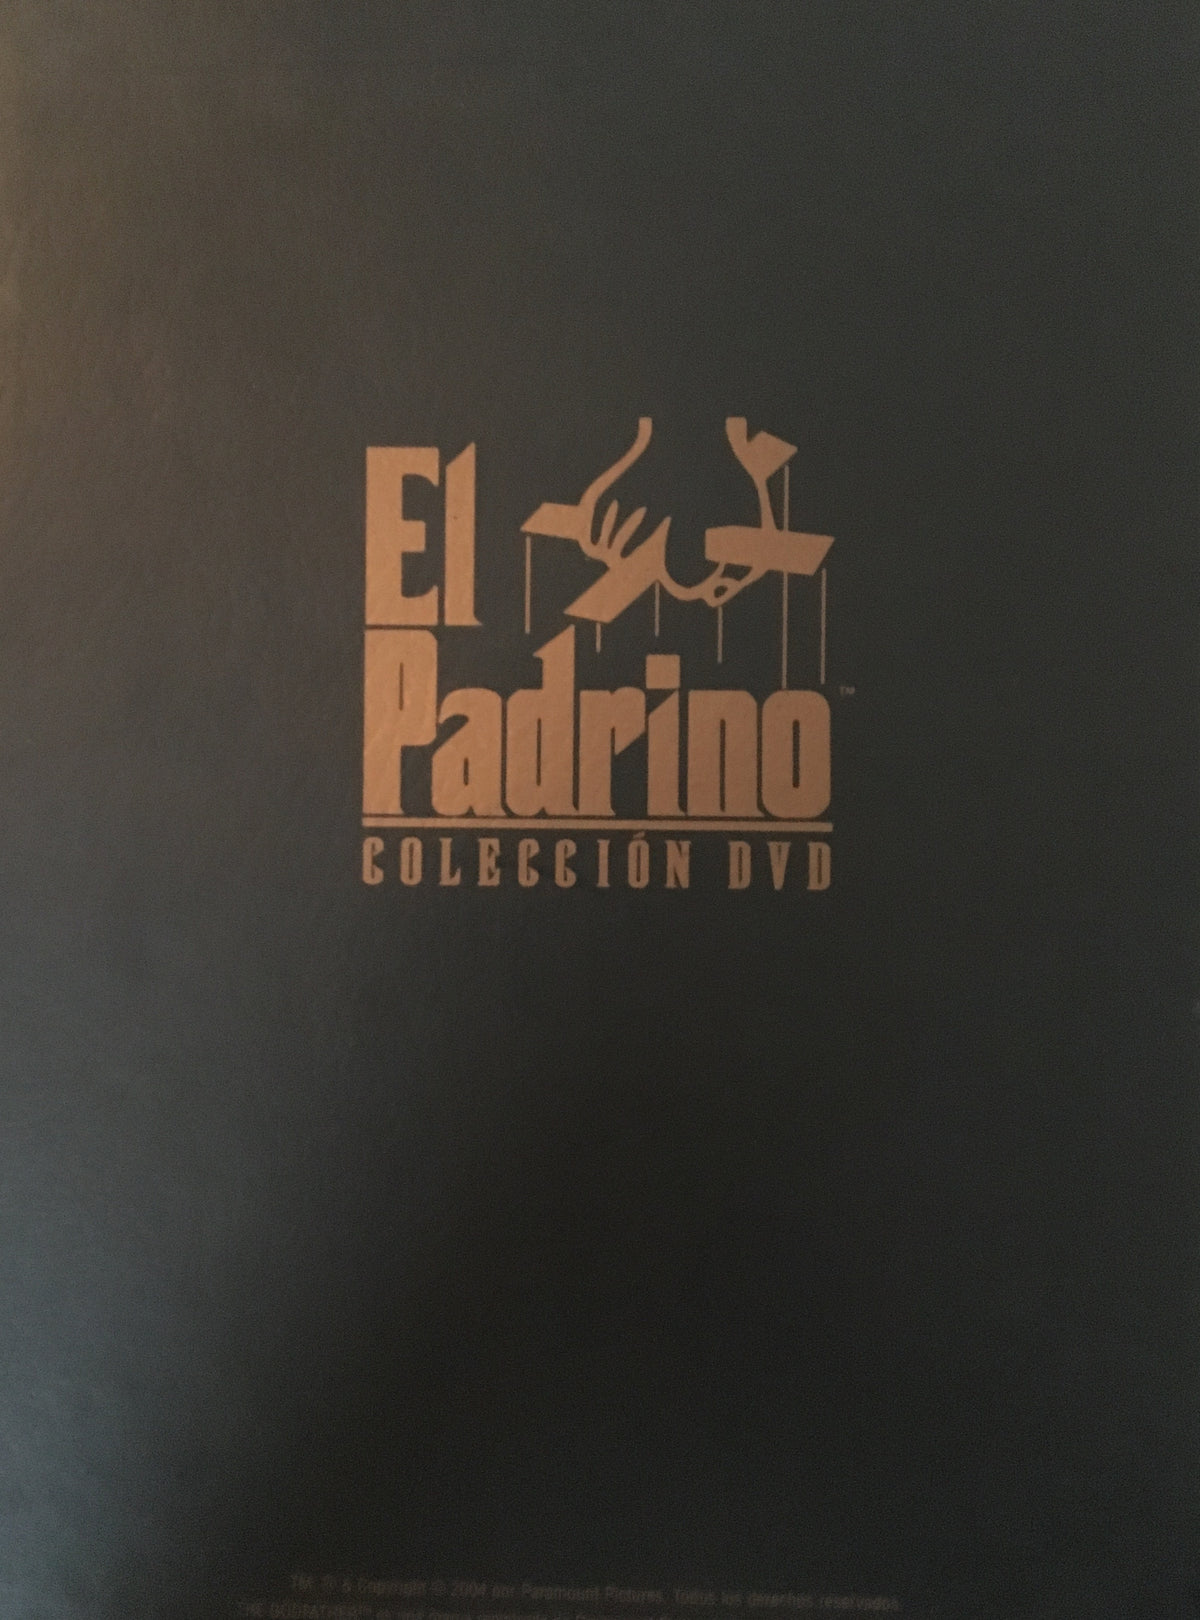 El Padrino (The Godfather) Trilogía en Español | Ingles | Subtitulos también en Portugués 4 DVDs